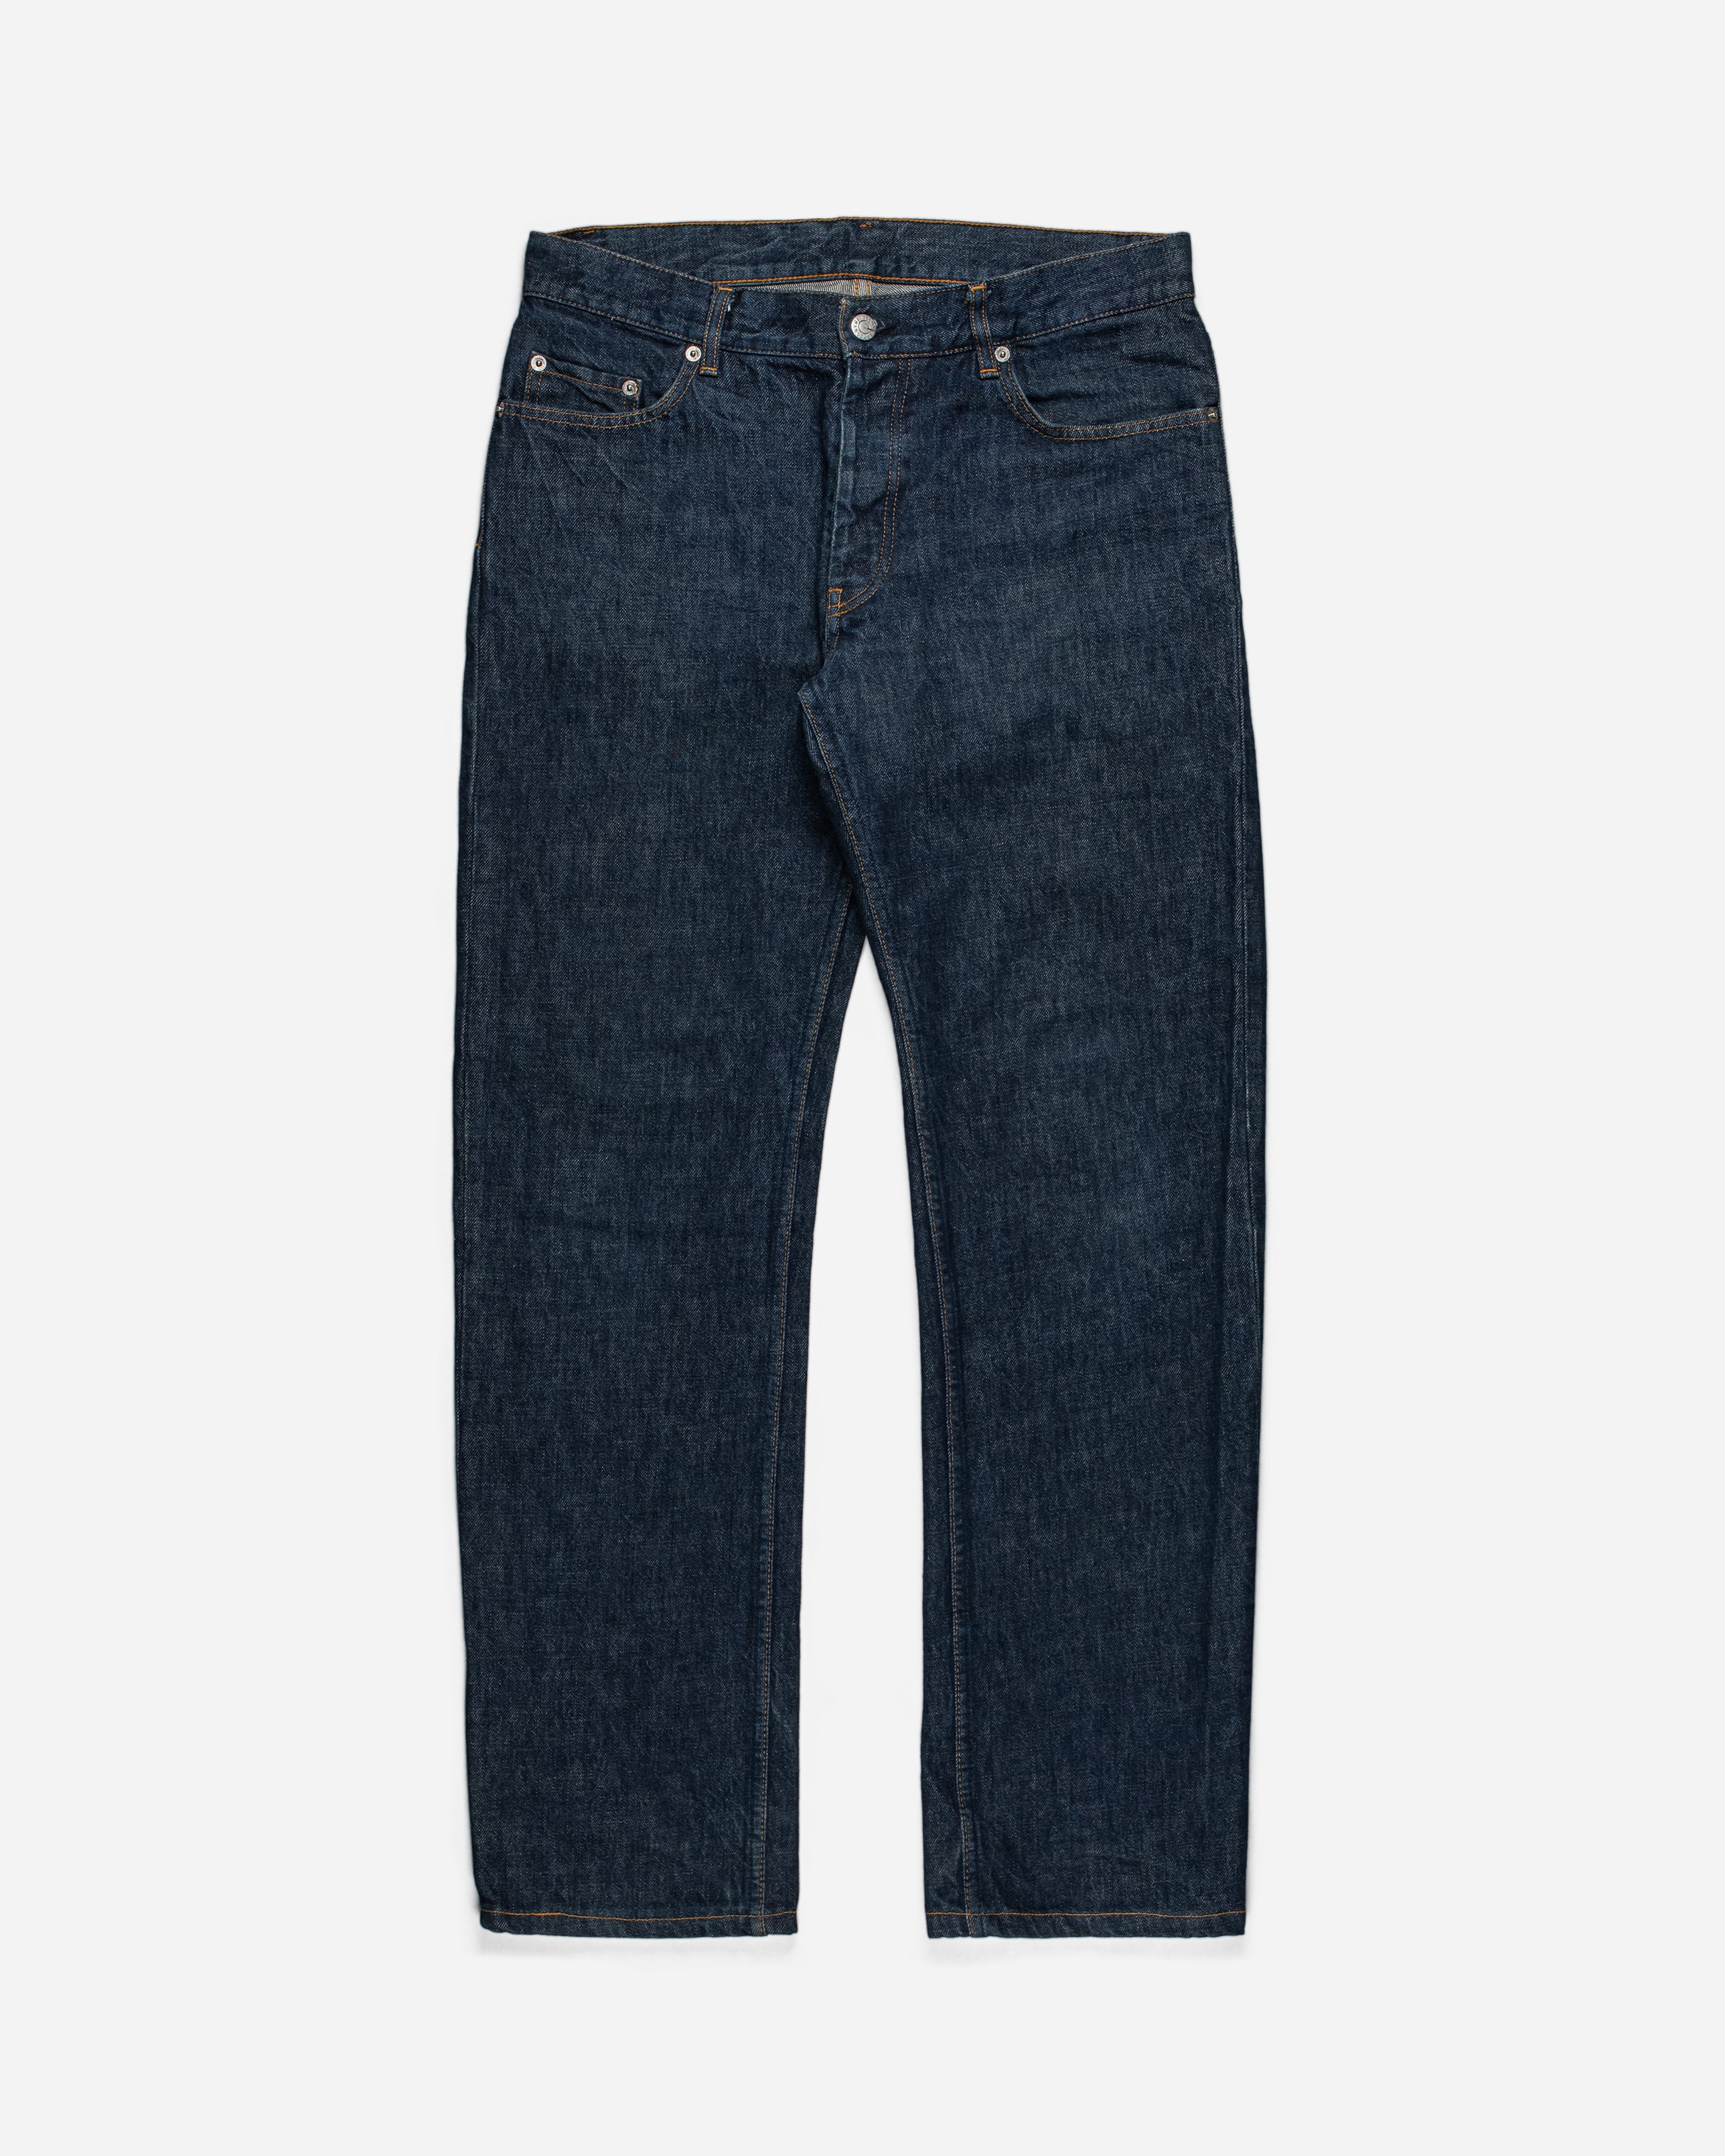 Helmut Lang Raw Denim Jeans Classic Cut - 1990s - SILVER LEAGUE